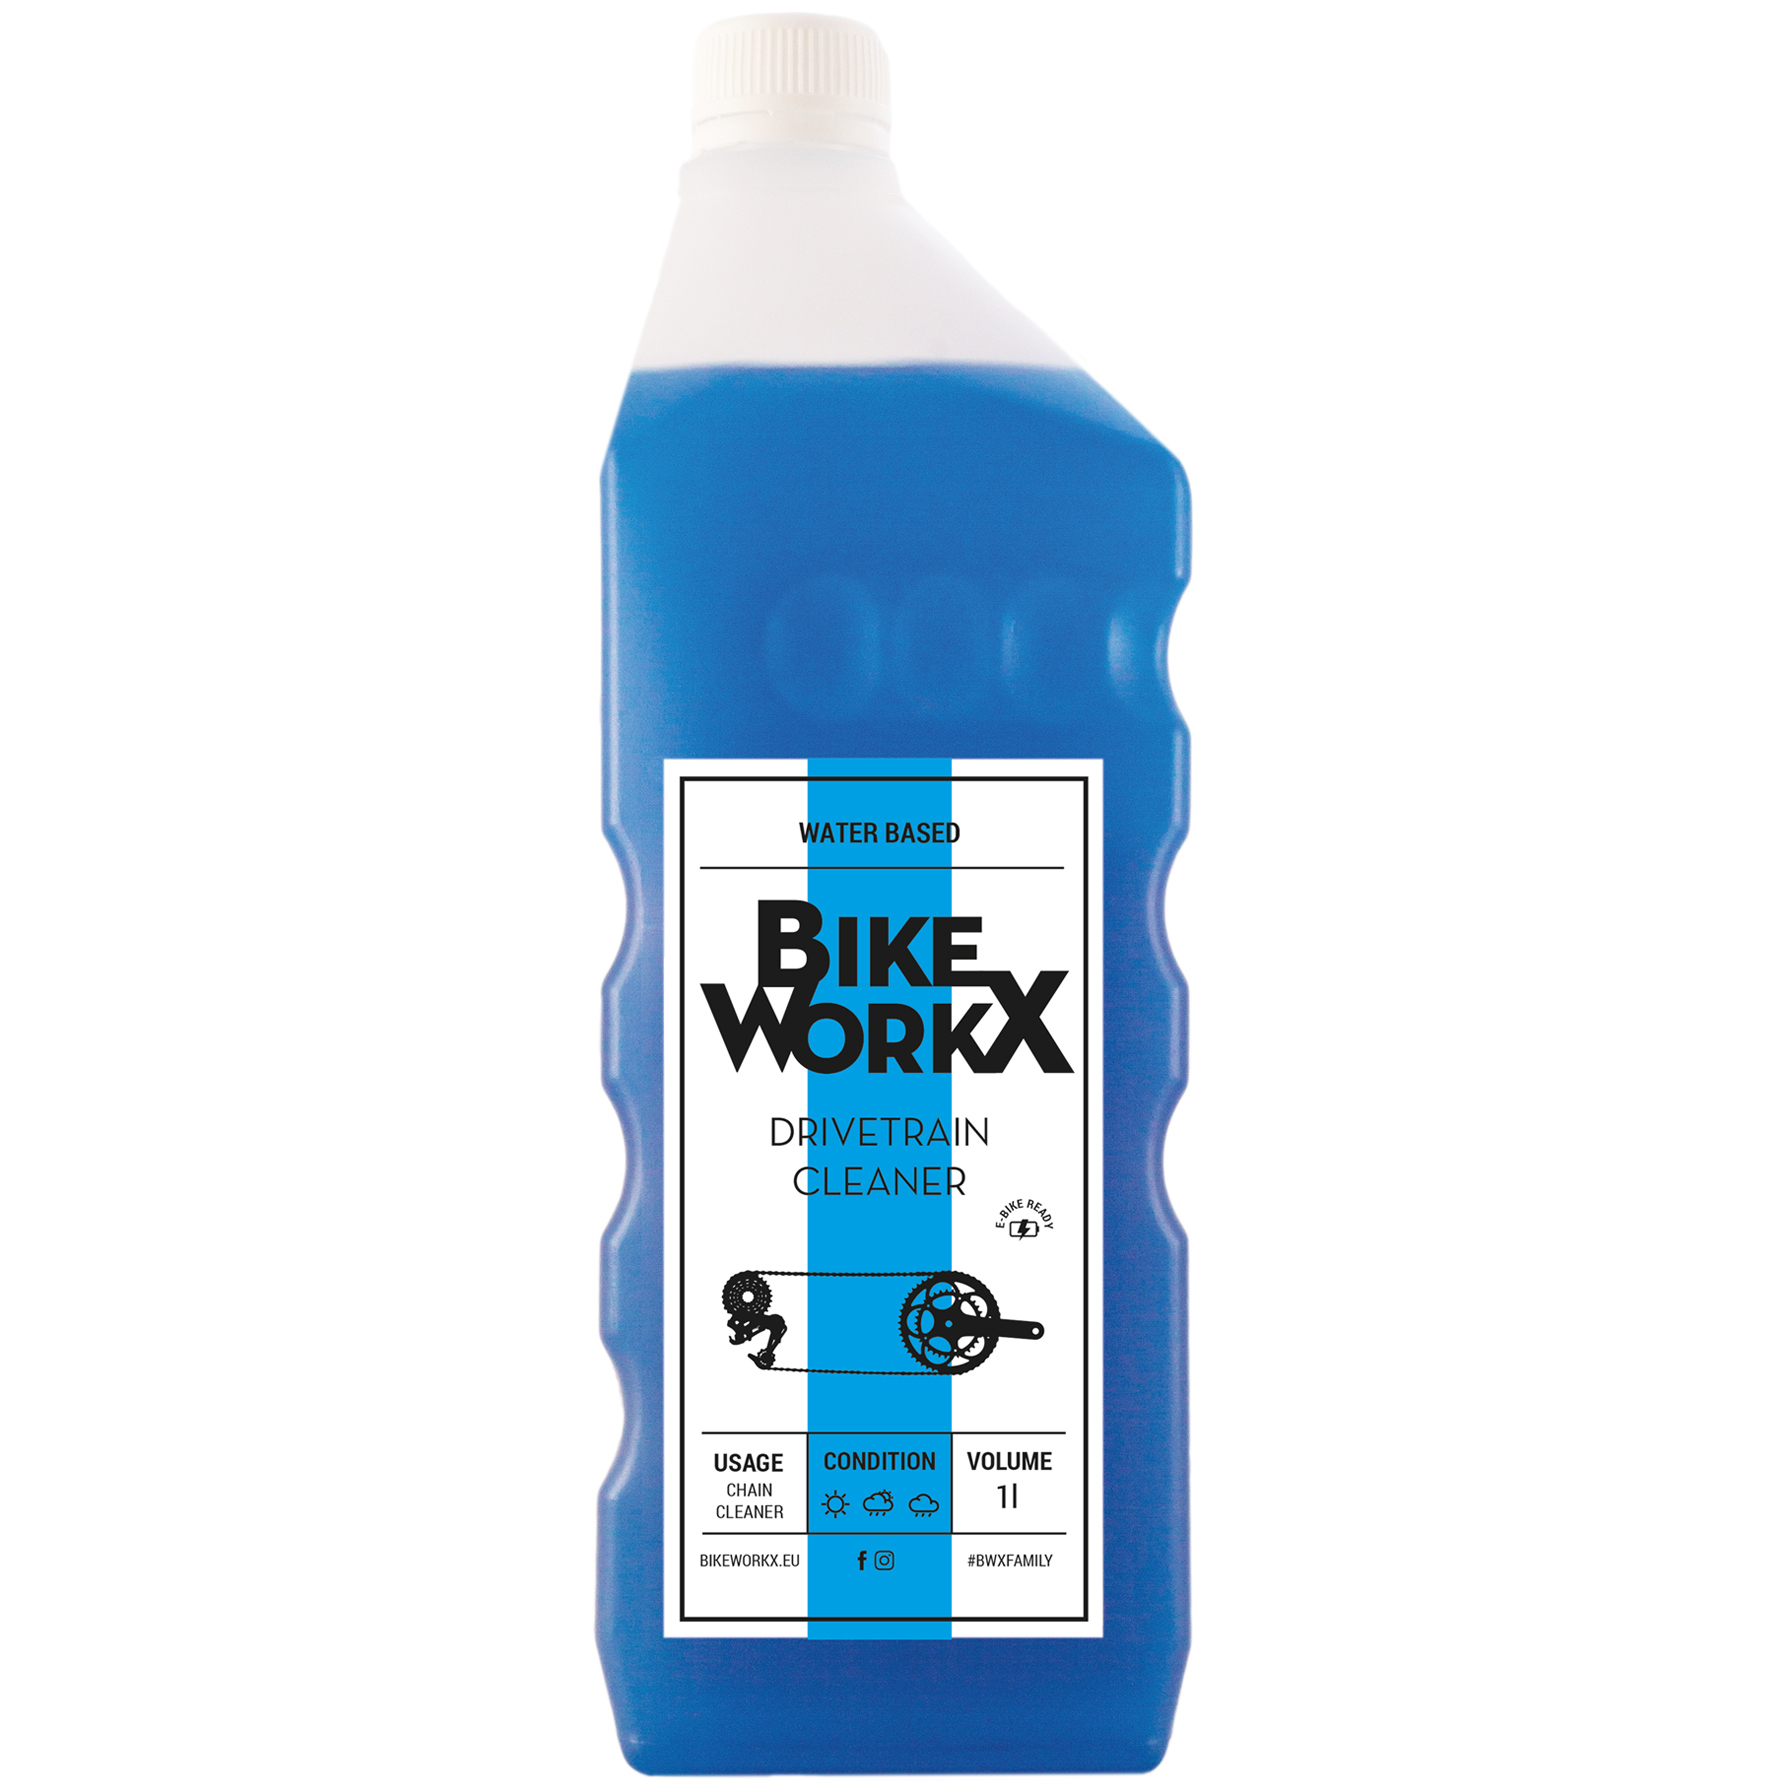 Productfoto van BikeWorkx Drivetrain Cleaner - Bottle 1000ml